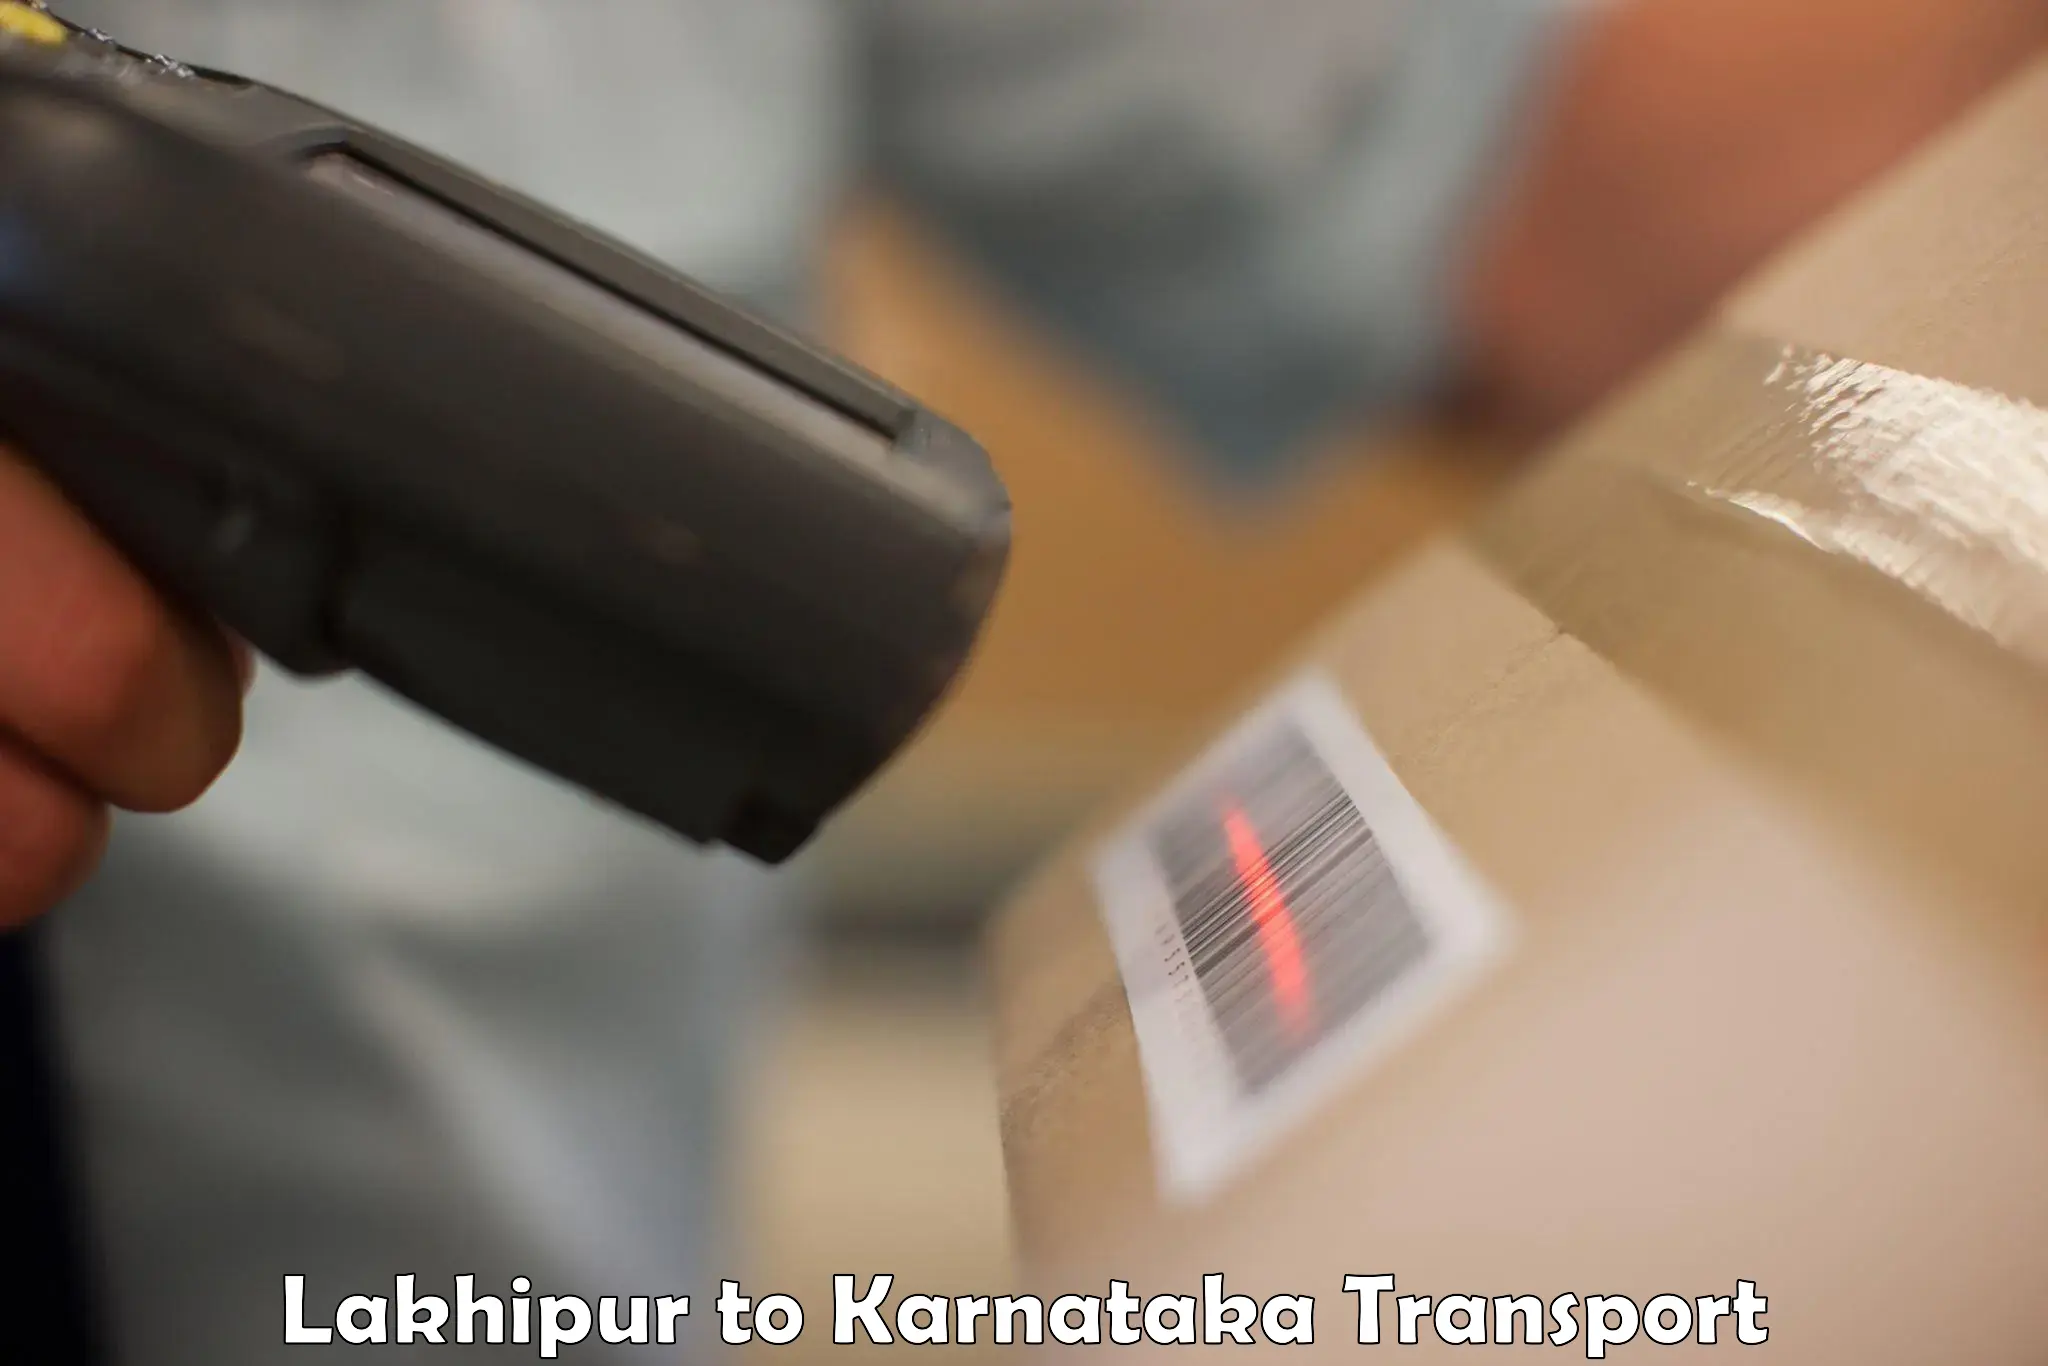 Shipping partner Lakhipur to Madikeri